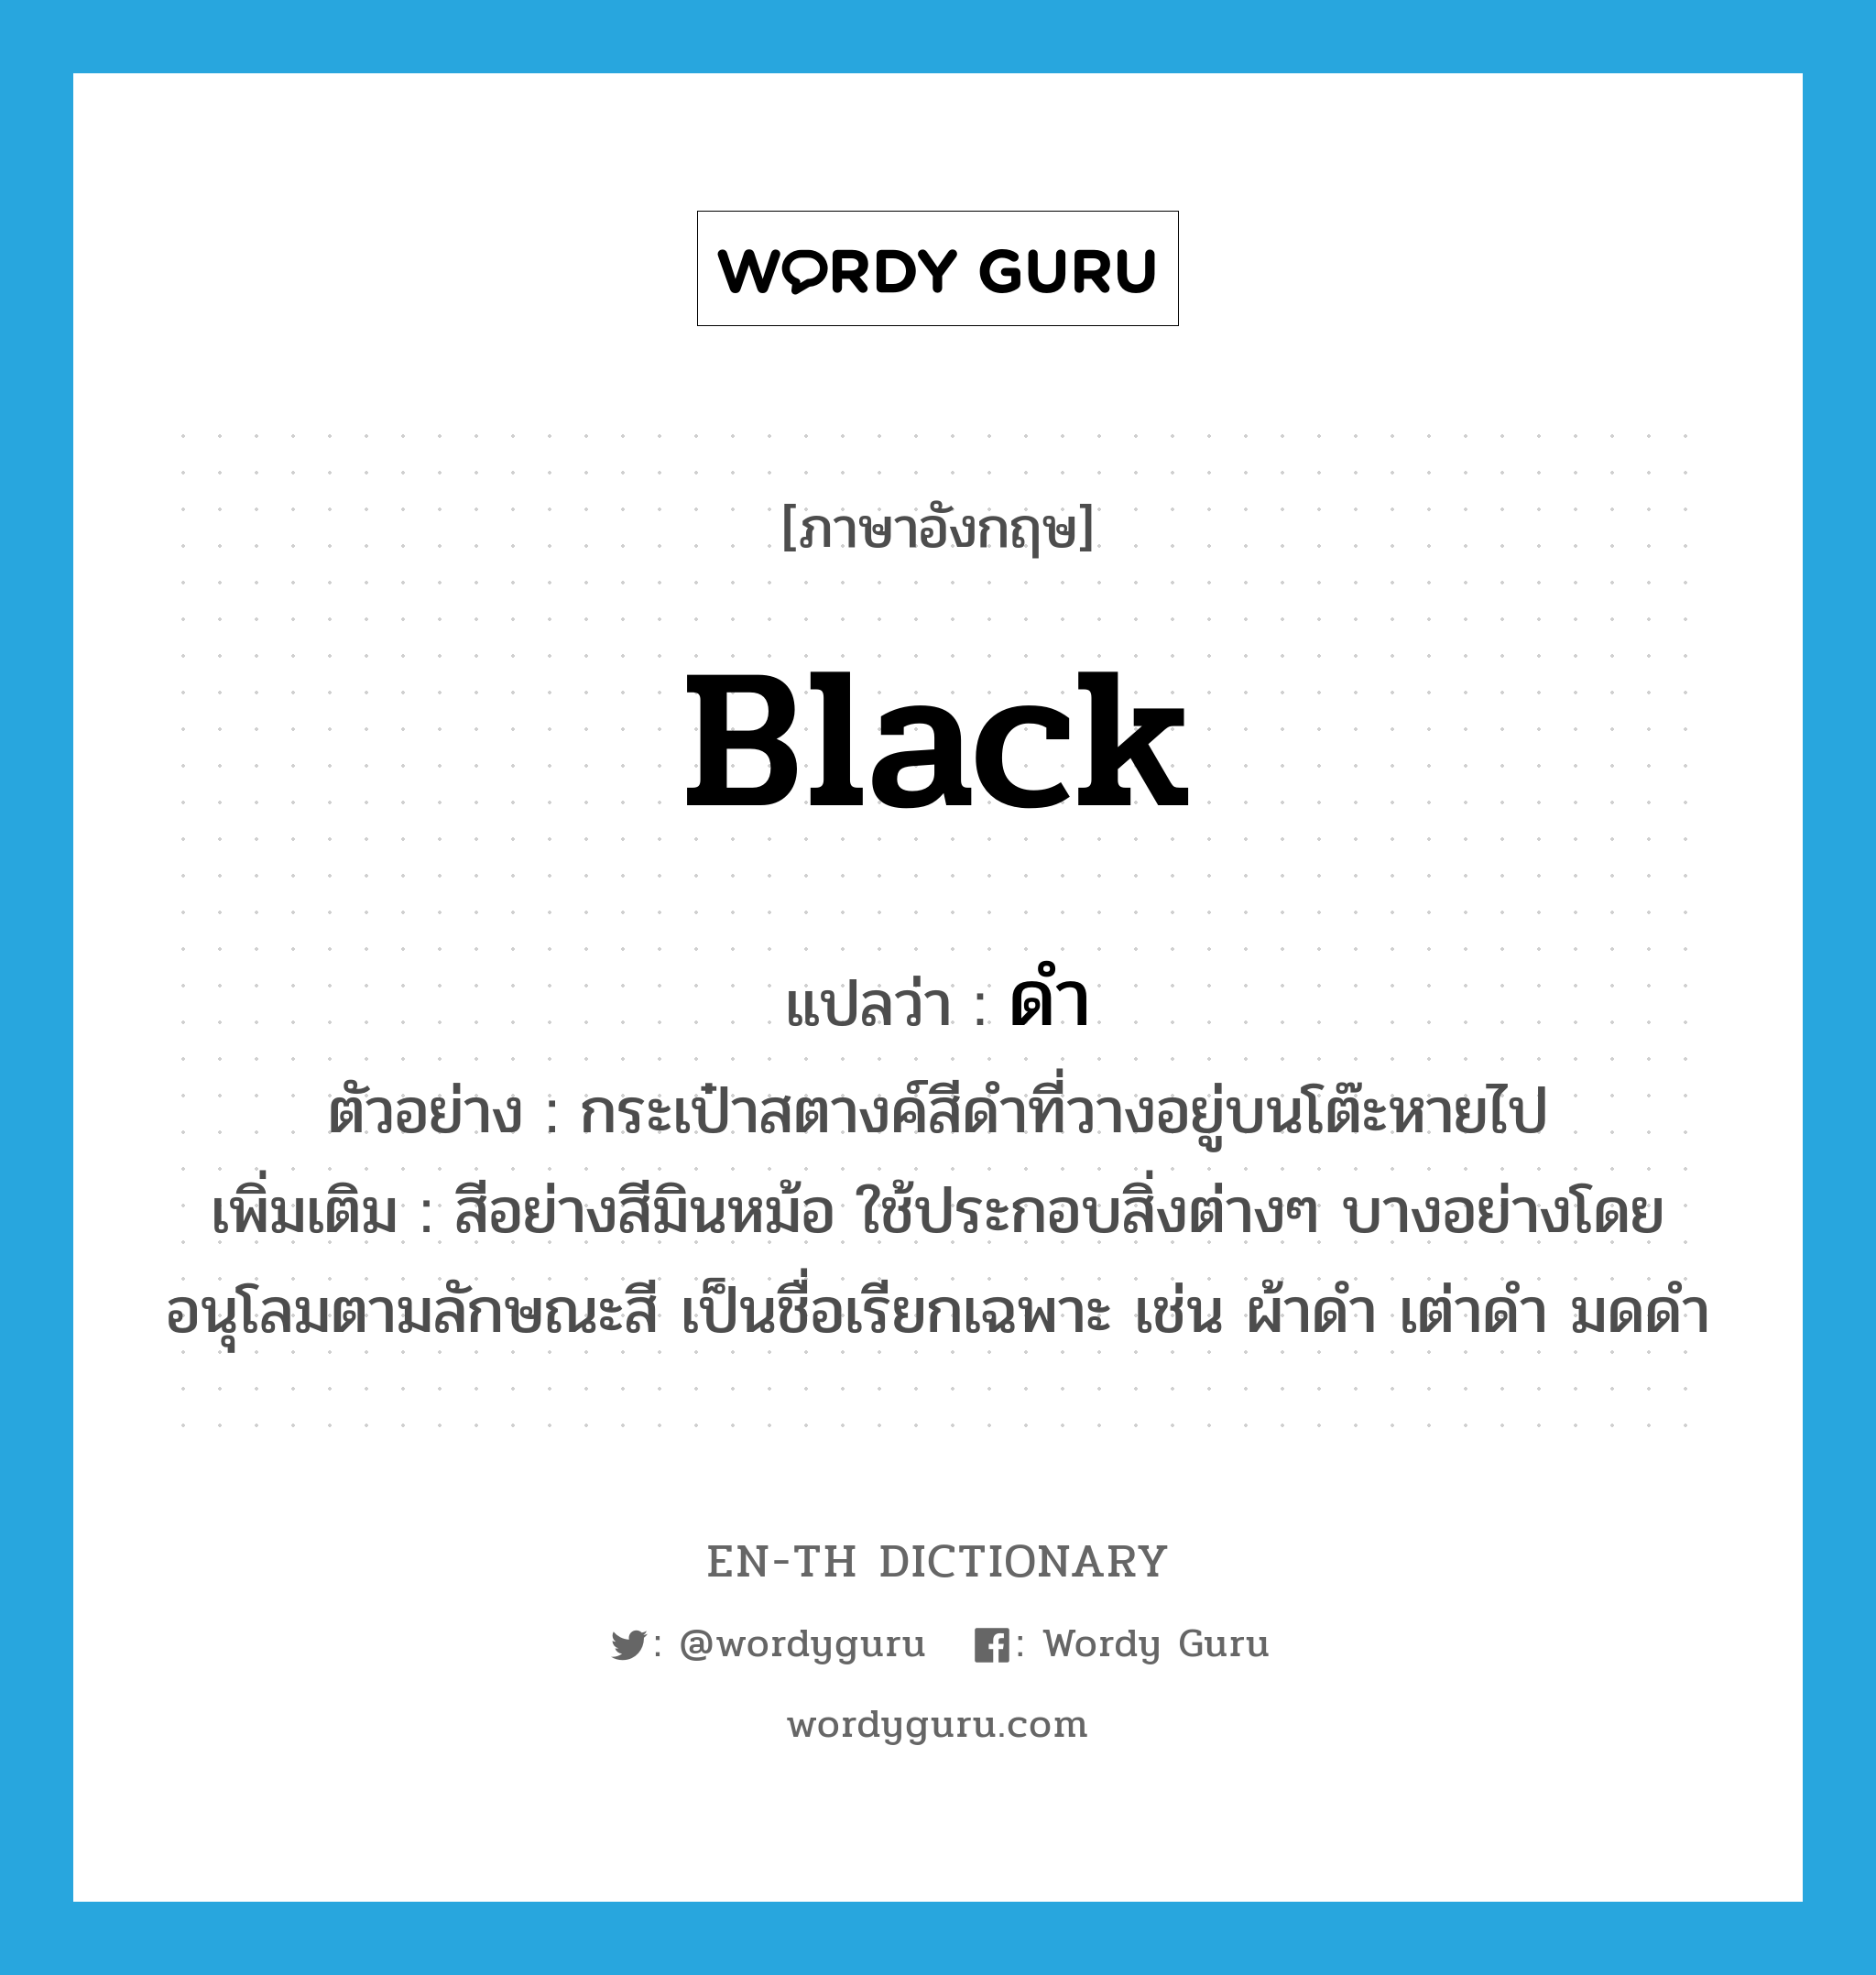 black แปลว่า?, คำศัพท์ภาษาอังกฤษ black แปลว่า ดำ ประเภท ADJ ตัวอย่าง กระเป๋าสตางค์สีดำที่วางอยู่บนโต๊ะหายไป เพิ่มเติม สีอย่างสีมินหม้อ ใช้ประกอบสิ่งต่างๆ บางอย่างโดยอนุโลมตามลักษณะสี เป็นชื่อเรียกเฉพาะ เช่น ผ้าดำ เต่าดำ มดดำ หมวด ADJ